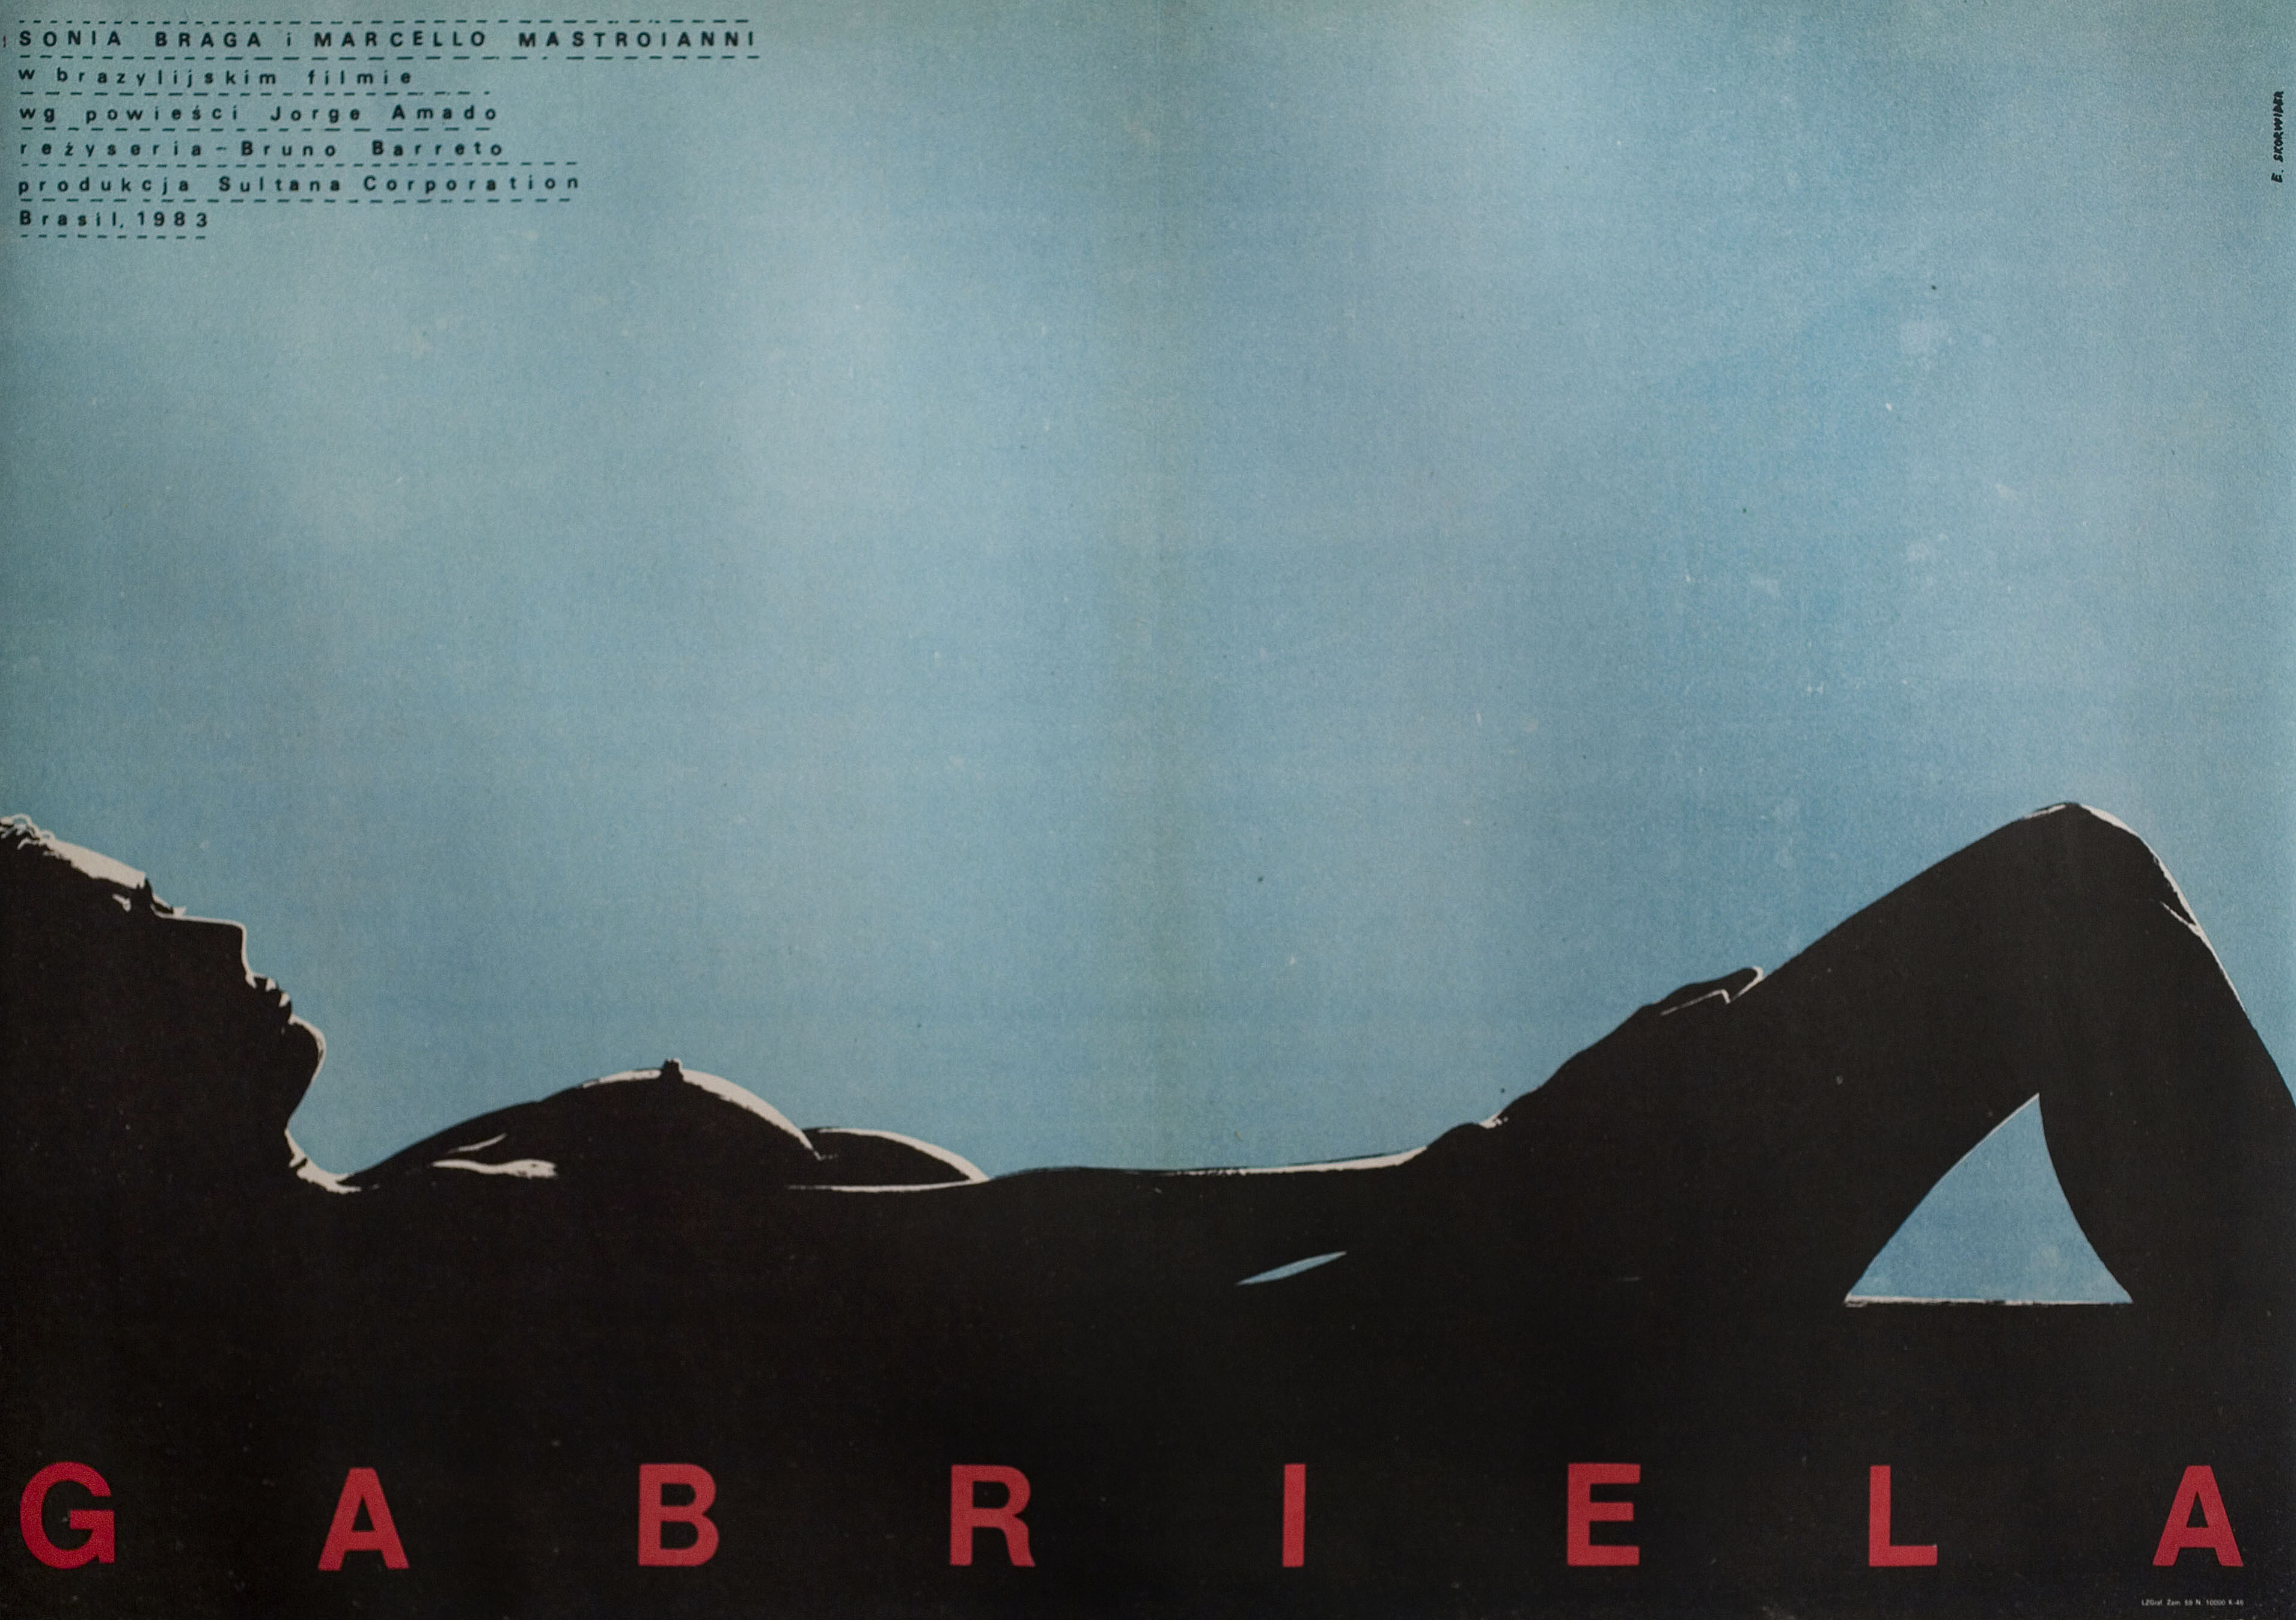 Габриэлла (Gabriela, 1983), режиссёр Бруно Баррето, польский постер к фильму, автор Евгениуш Скорвидер (графический дизайн, 1983 год)